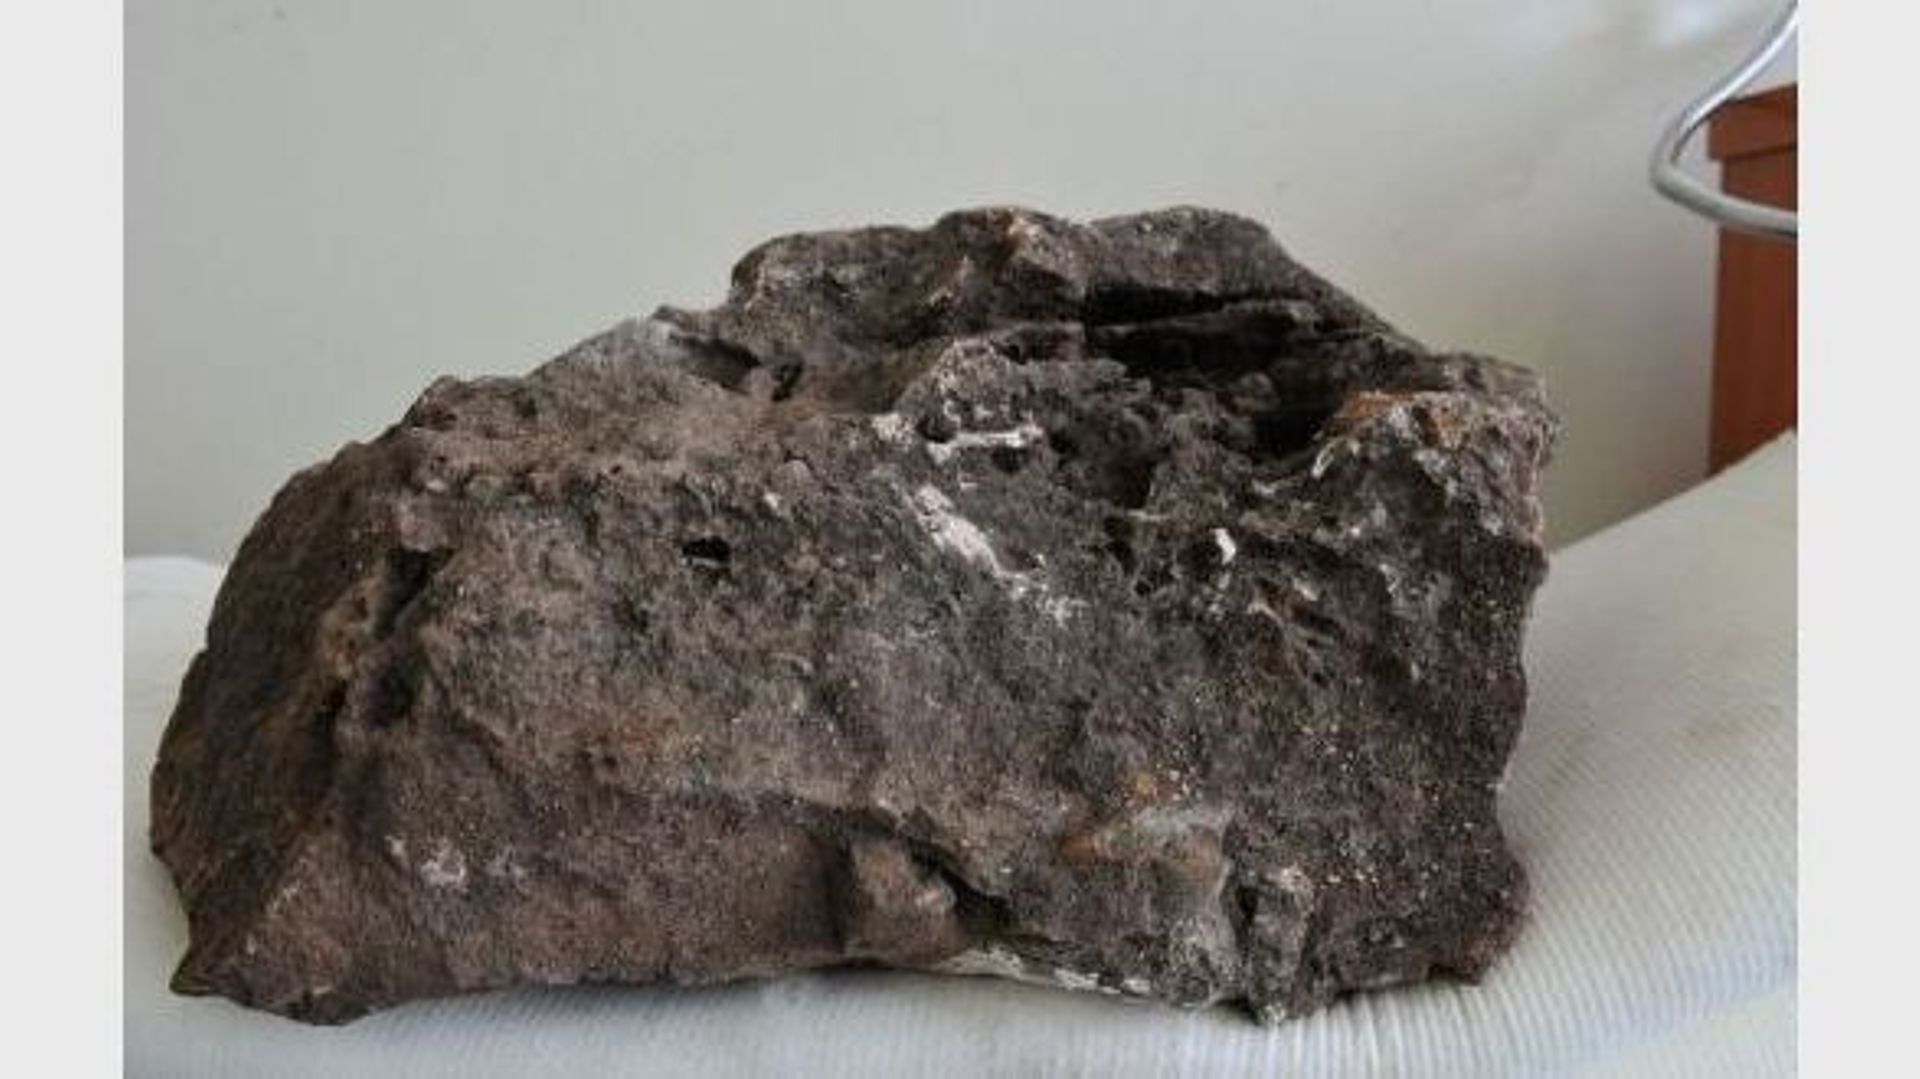 Le bloc rocheux qui contient le squelette "le plus complet jamais découvert d'un ancêtre de l'homme" selon les scientifiques, le 12 juillet 2012 à Johannesbourg